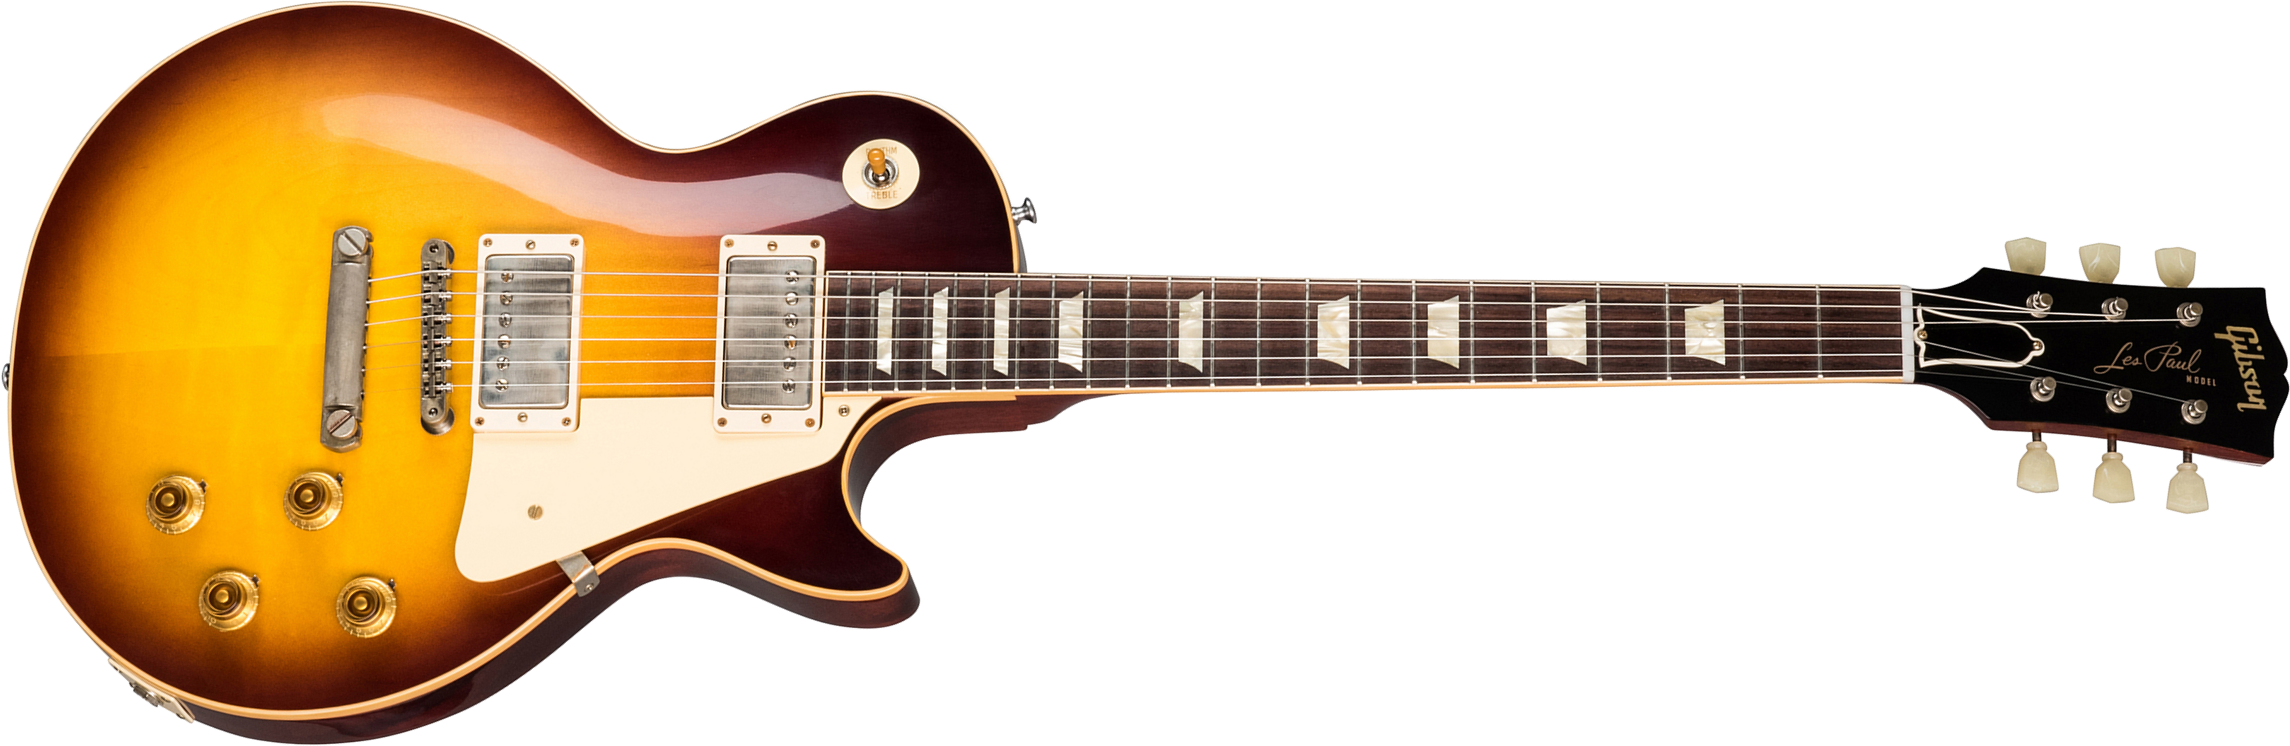 Gibson Custom Shop Les Paul Standard 1958 Reissue 2019 2h Ht Rw - Vos Bourbon Burst - Guitarra eléctrica de corte único. - Main picture